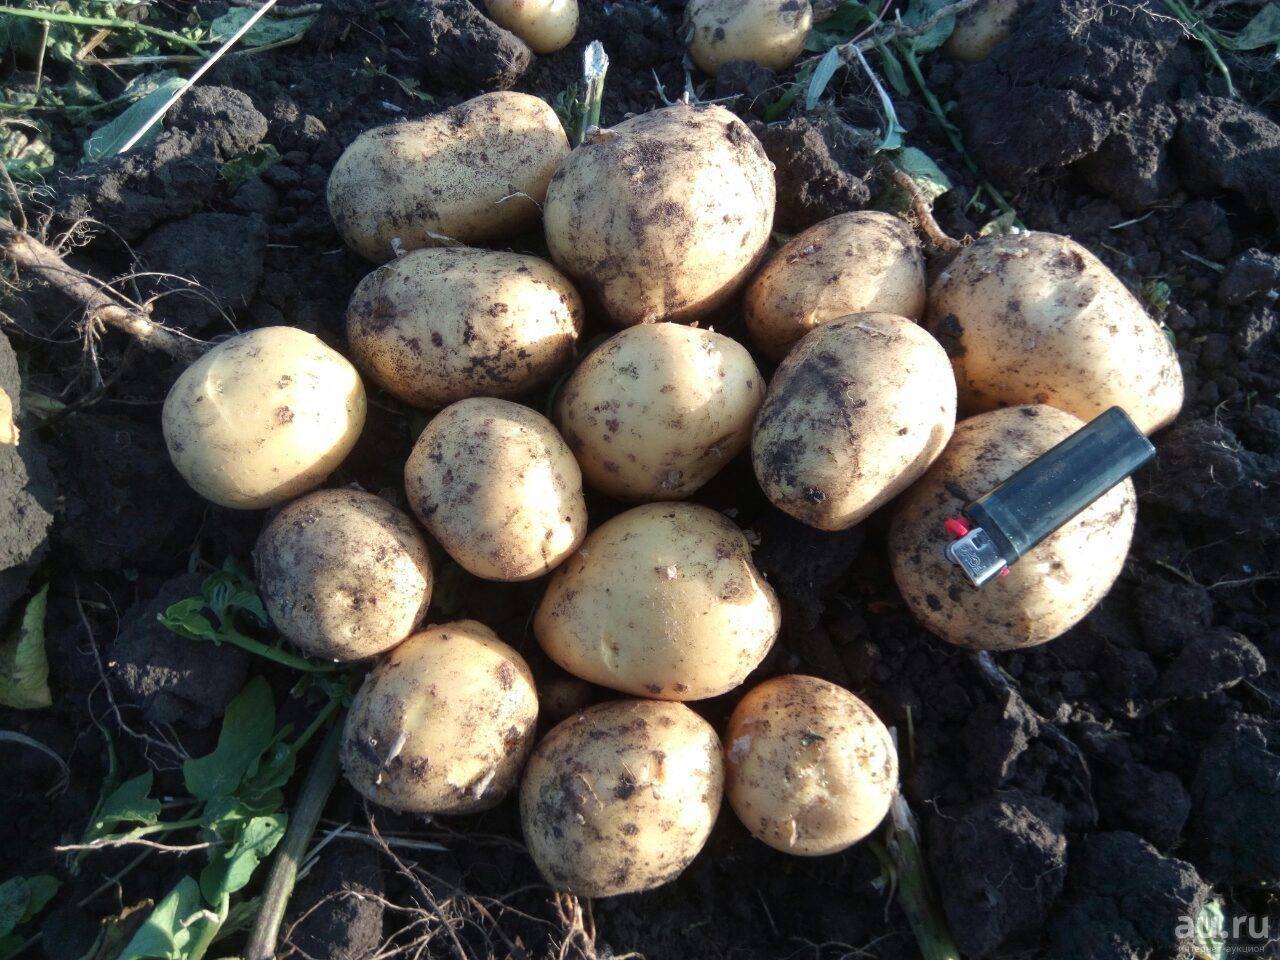 Картофель гала: описание сорта, фото, выращивание, отзывы